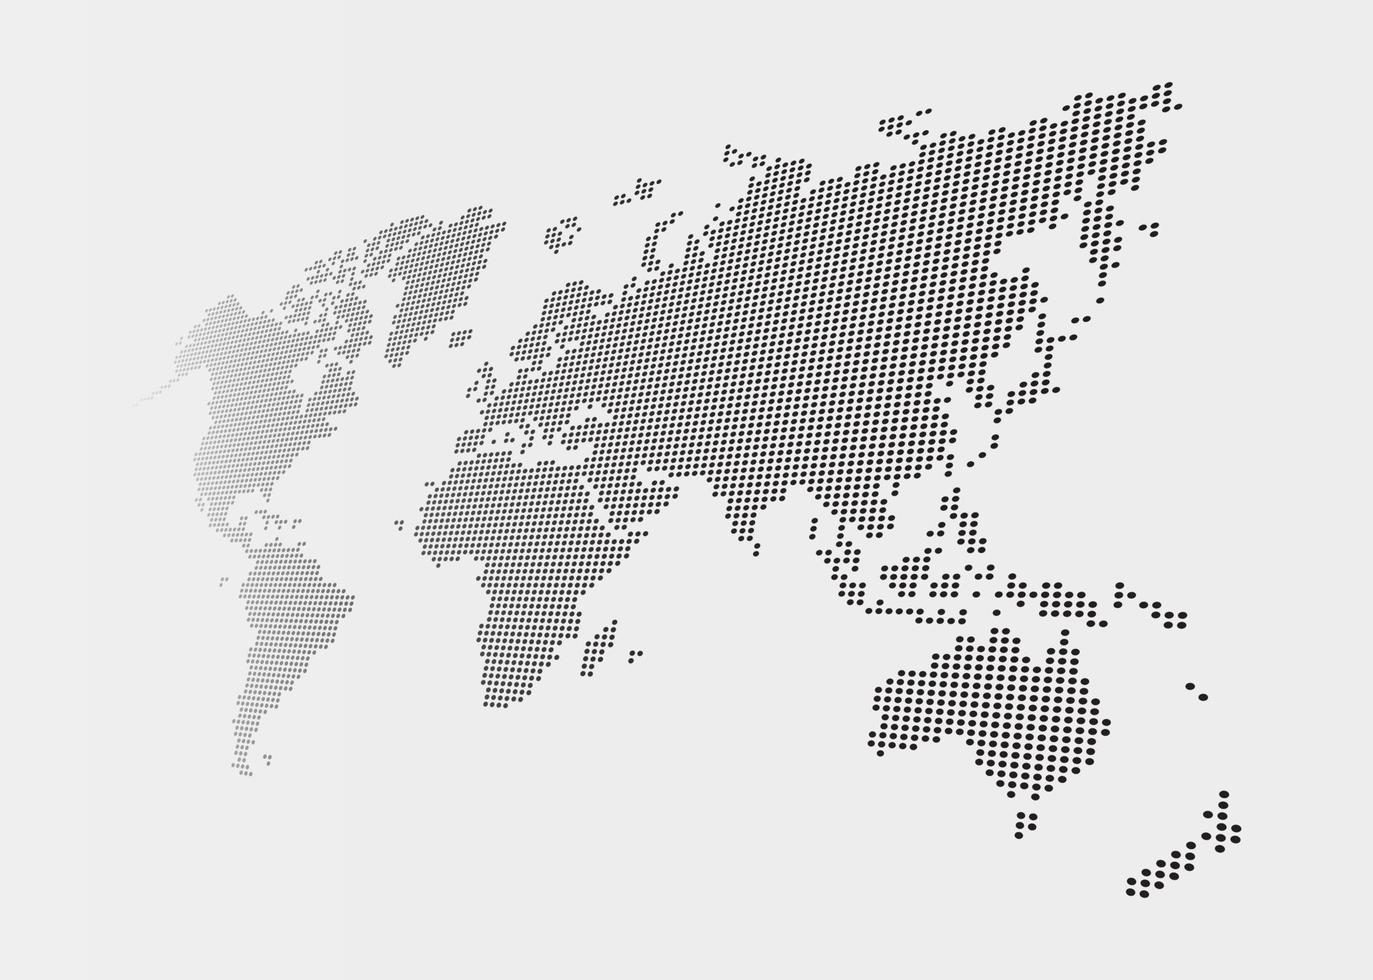 verzerrte und gepunktete Weltkarte auf grauem Hintergrund vektor